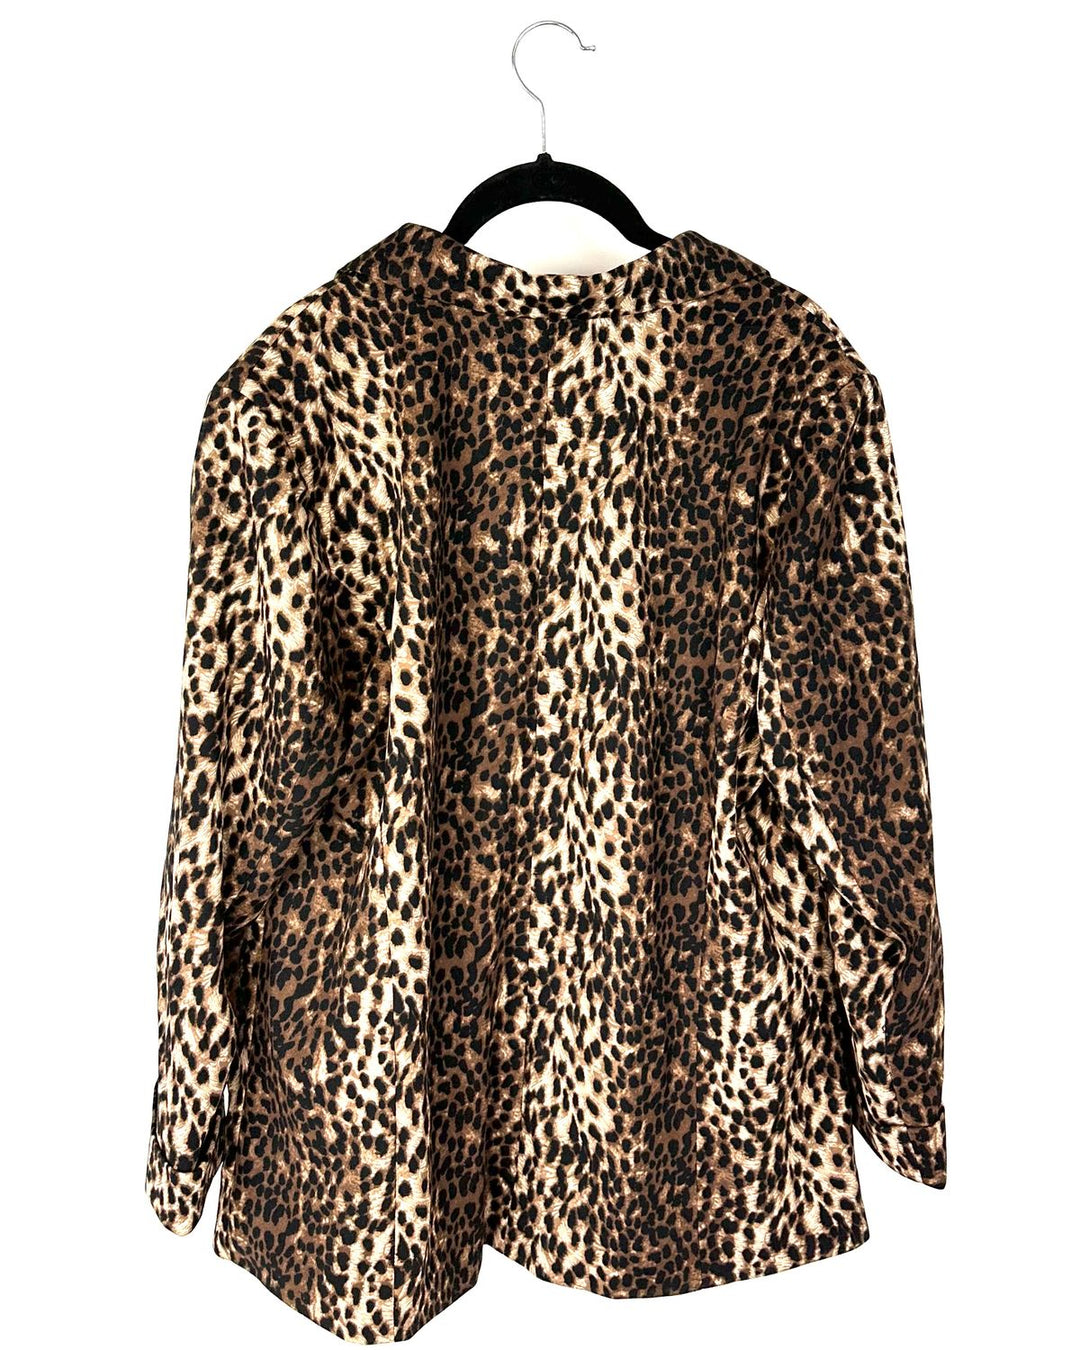 Leopard Print Blazer - Size 10-12